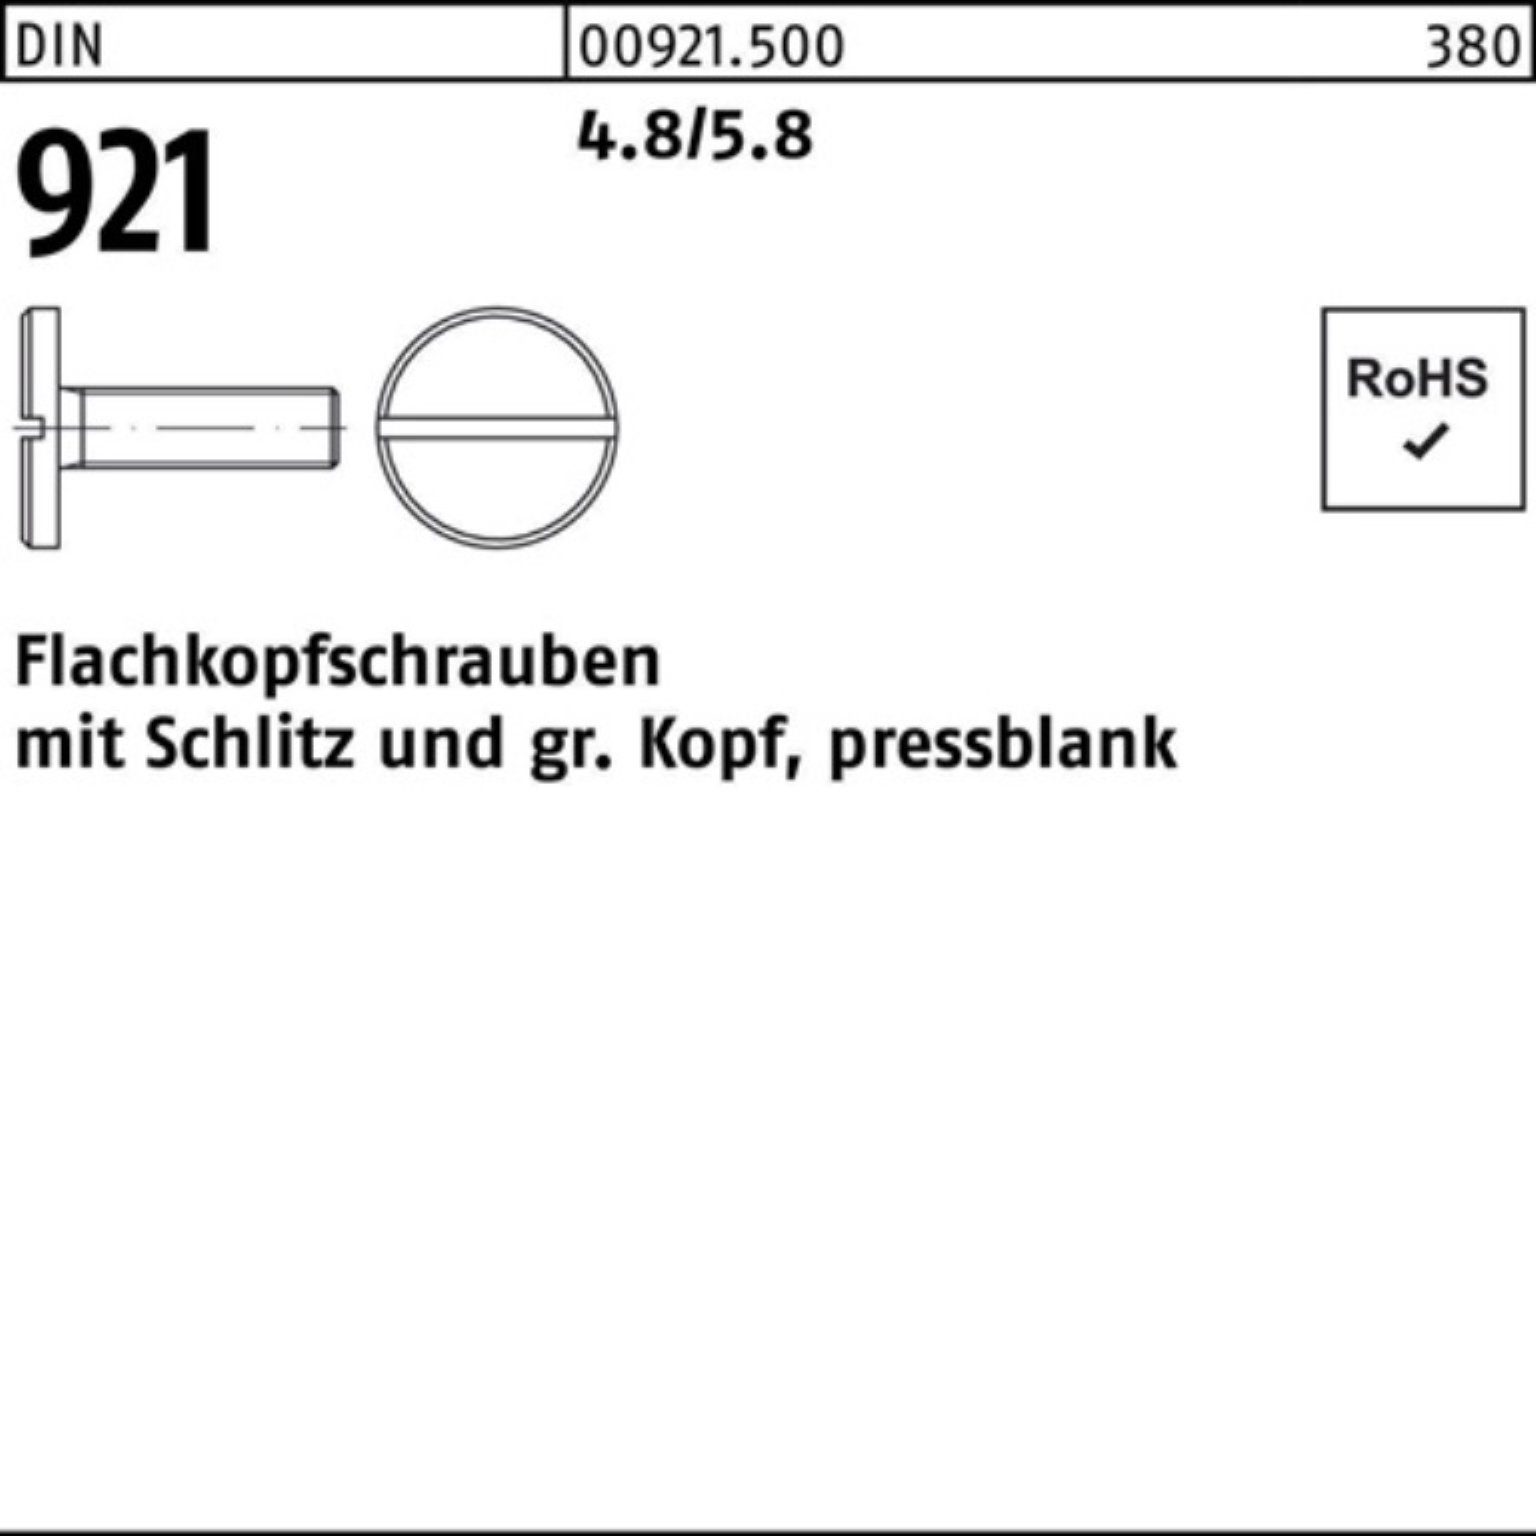 Reyher Schraube 100er Pack Flachkopfschraube DIN 921 Schlitz M3x 5 4.8/5.8 100 Stück